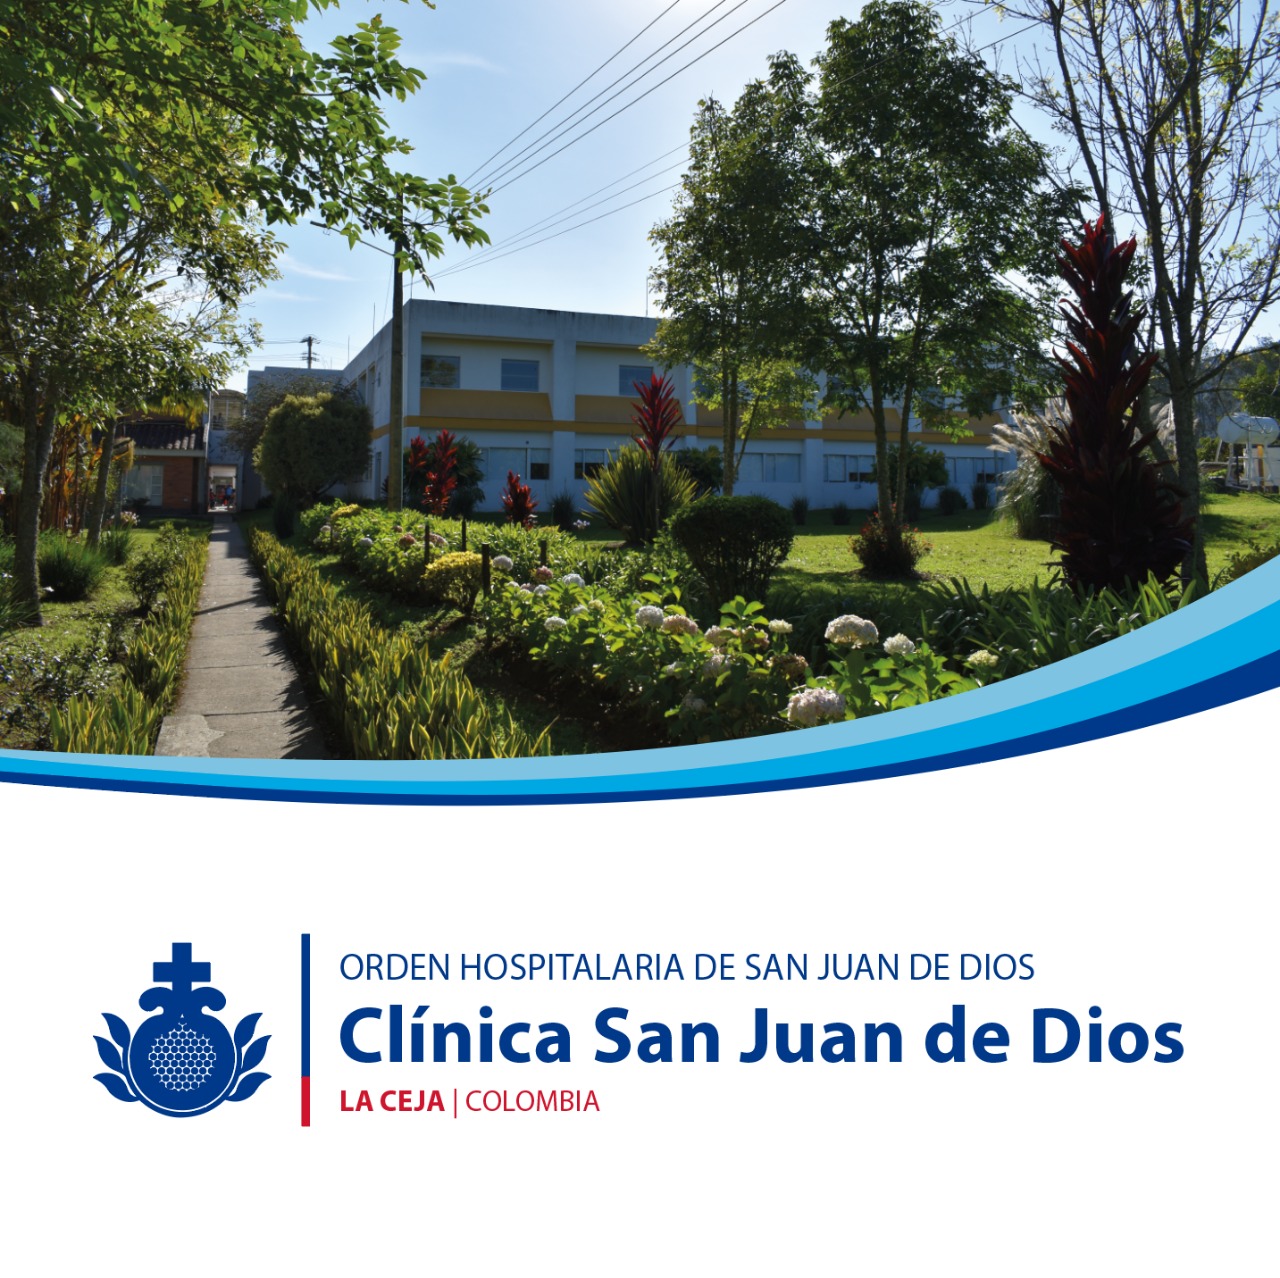 Centro Colombia Clinica San Juan de Dios 1 | Orden Hospitalaria San Juan de Dios